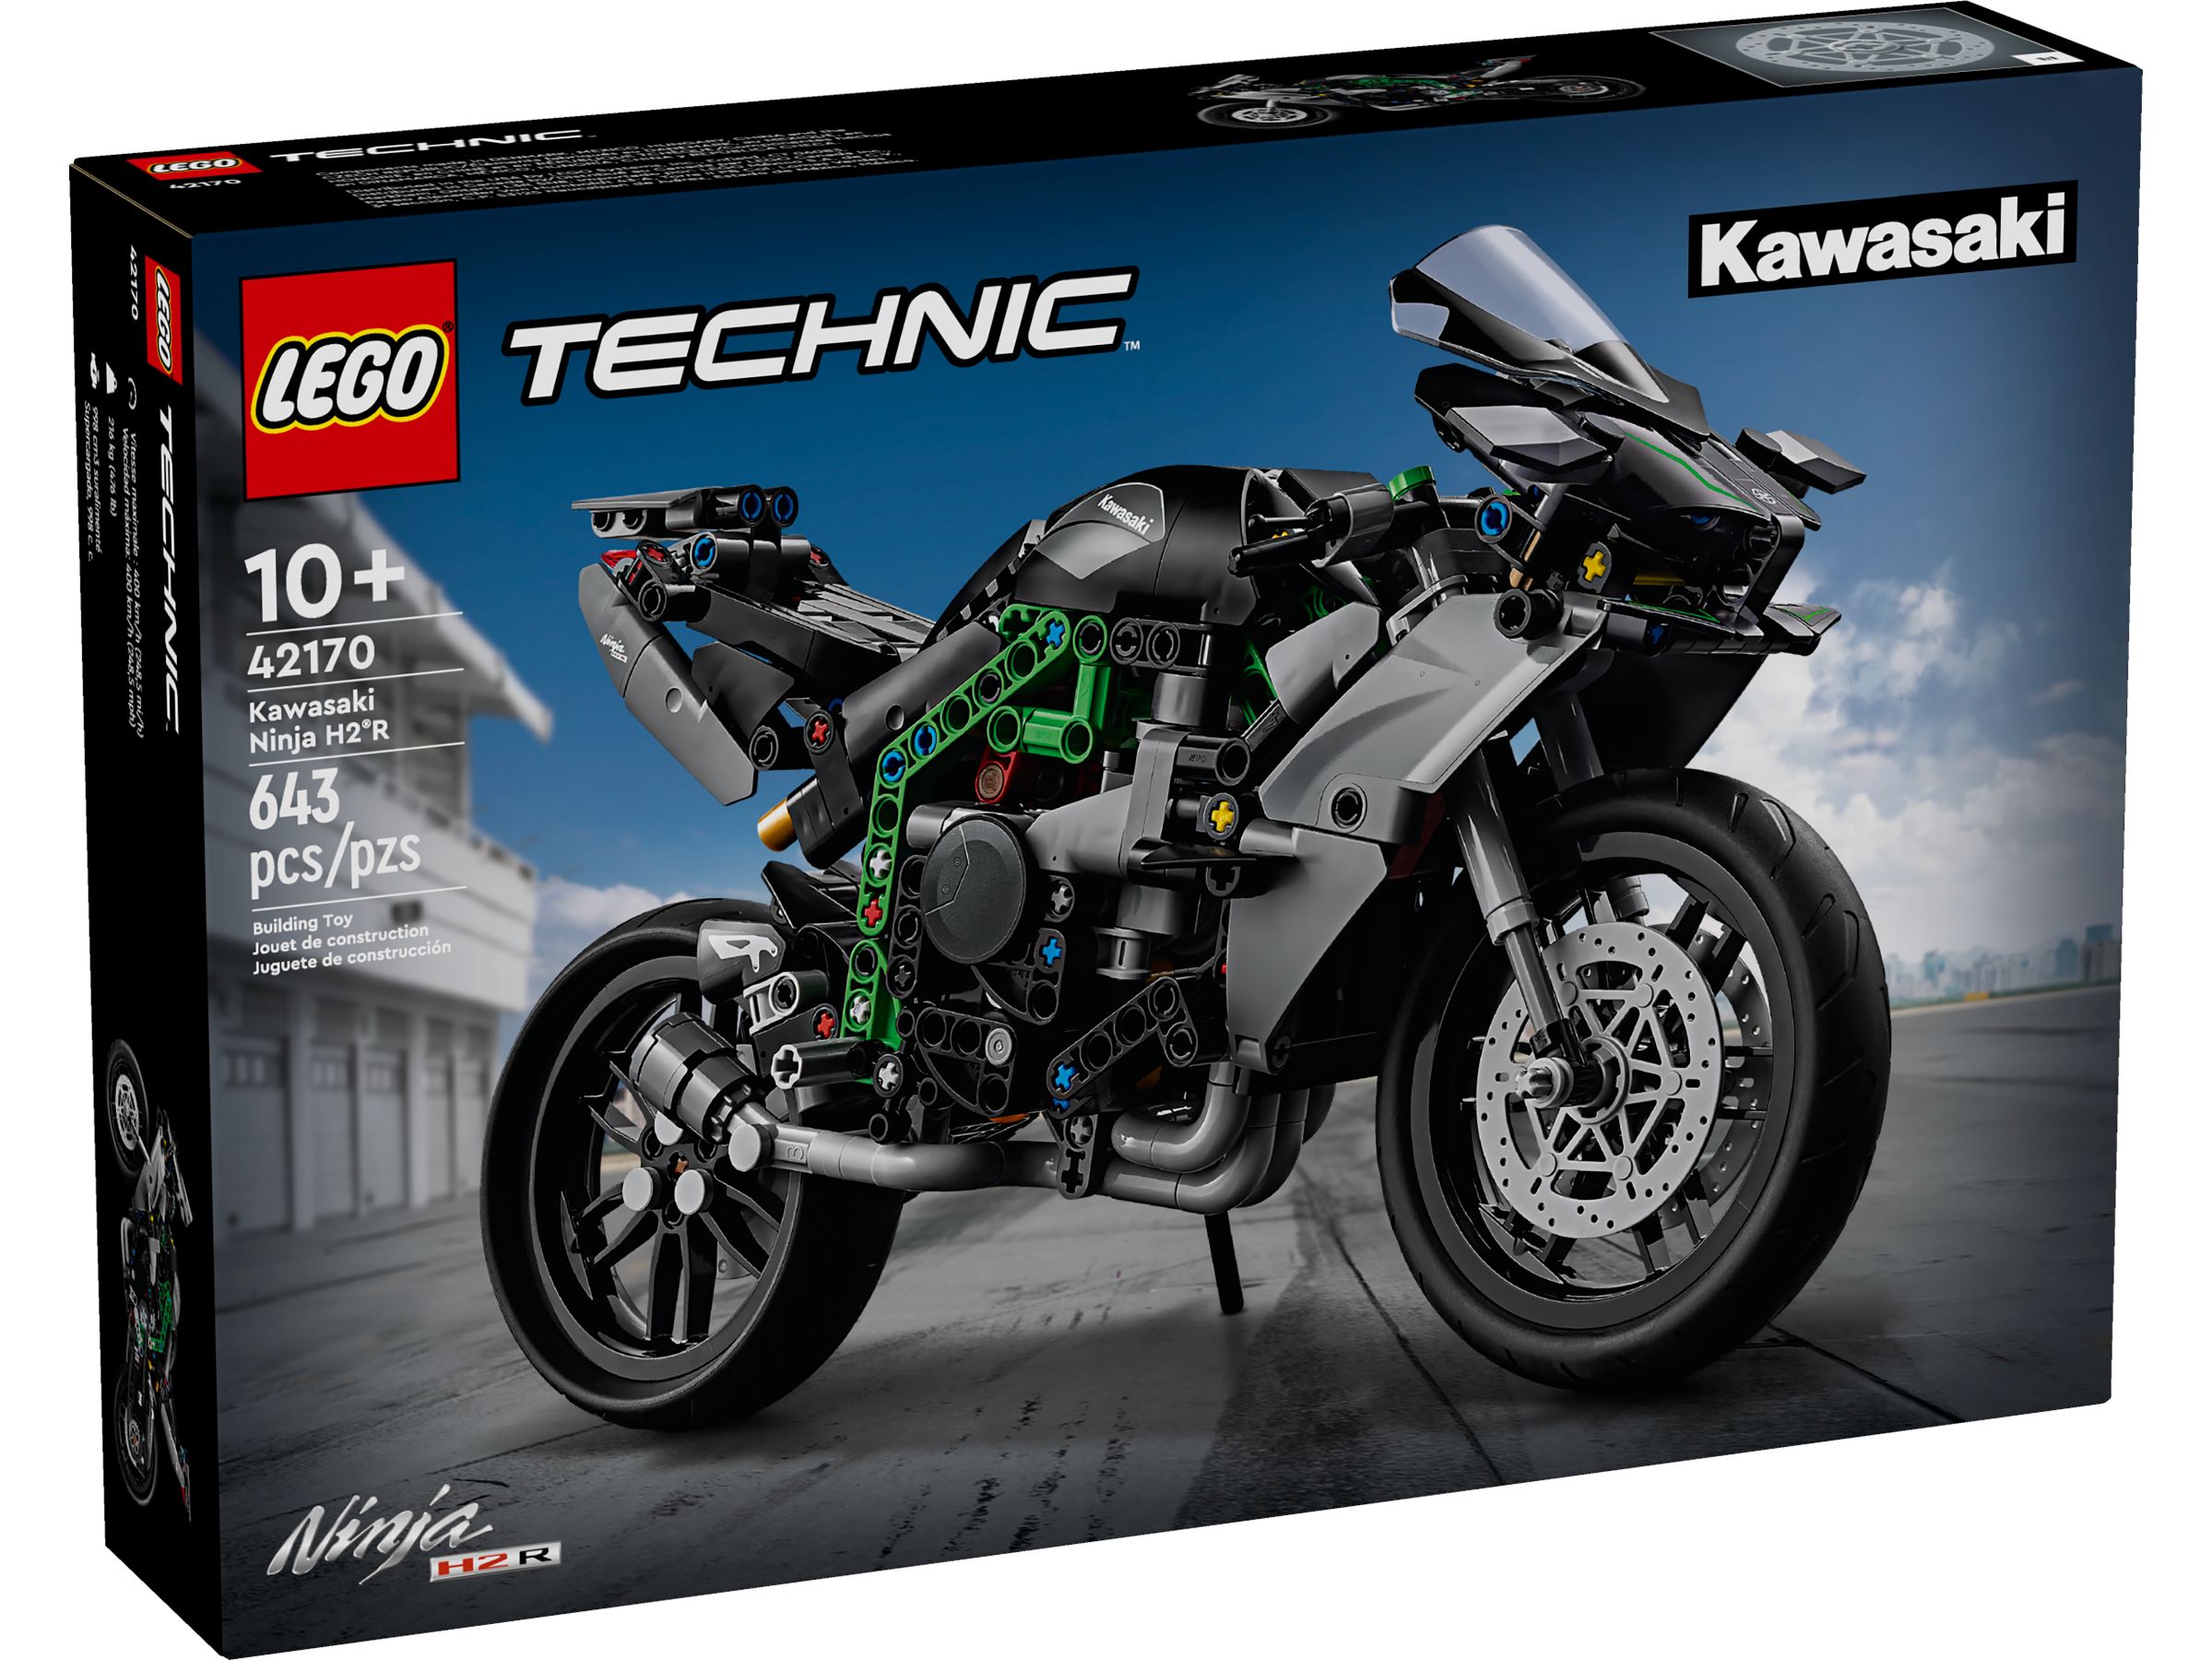 LEGO Technic 42170 Kawasaki Ninja H2R Motorrad LEGO_42170_alt1.jpg